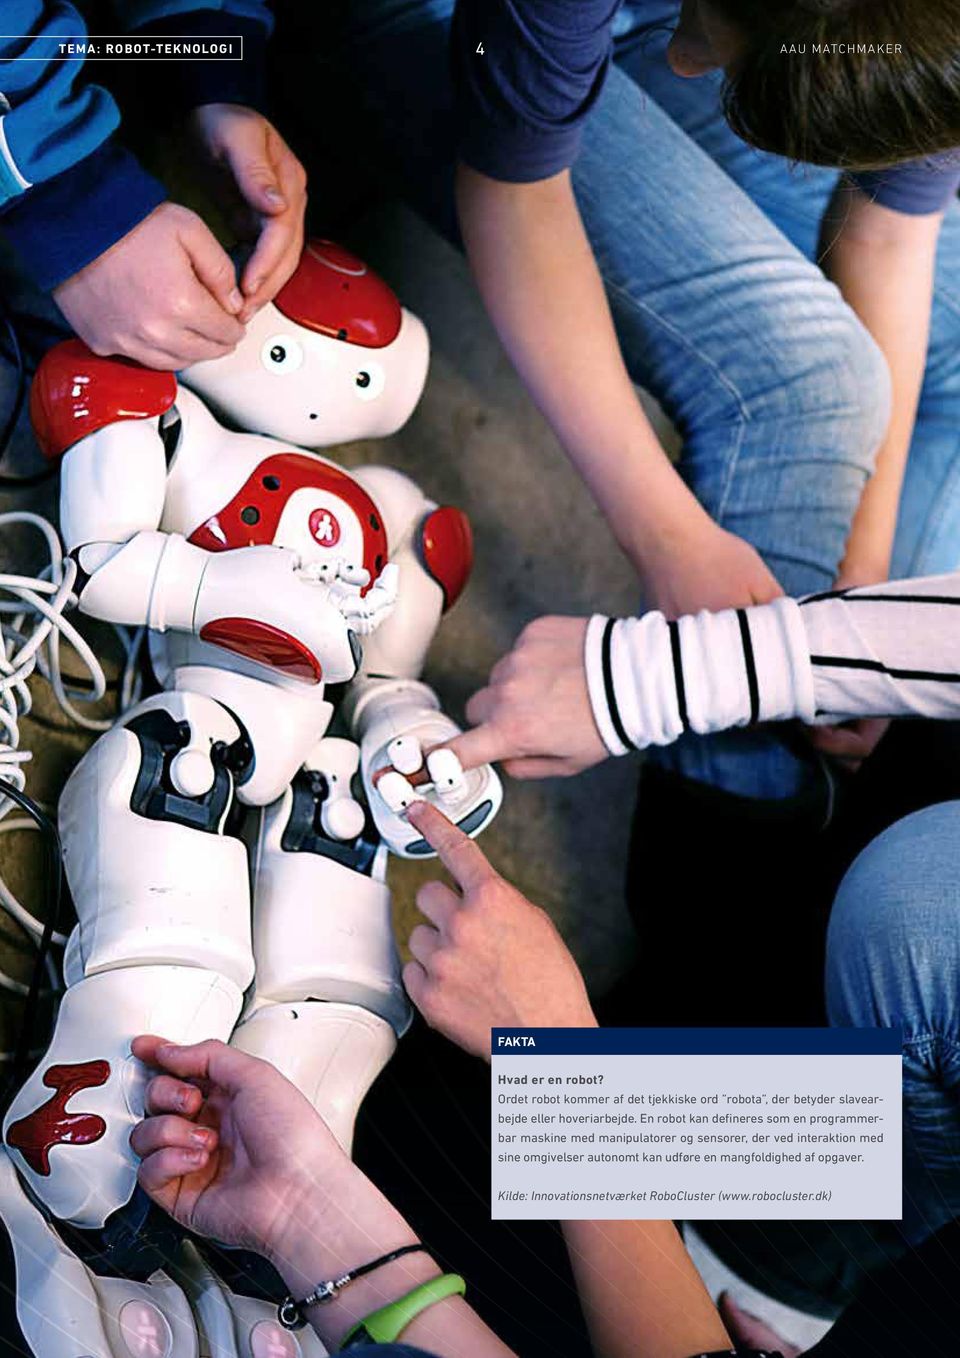 En robot kan defineres som en programmerbar maskine med manipulatorer og sensorer, der ved